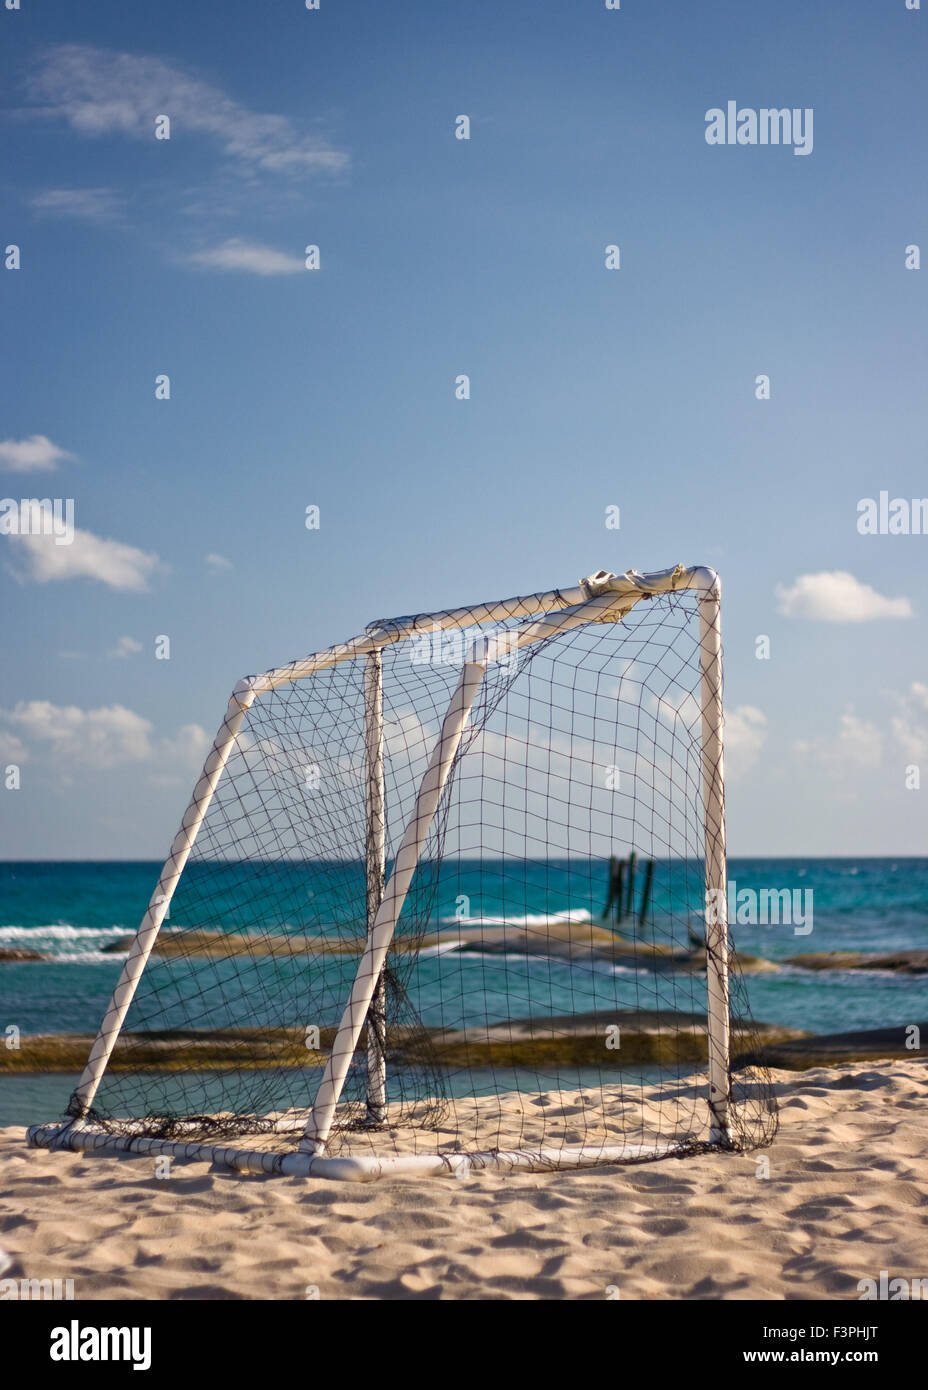 Football goal on beach against blue sky and sea Stock Photo